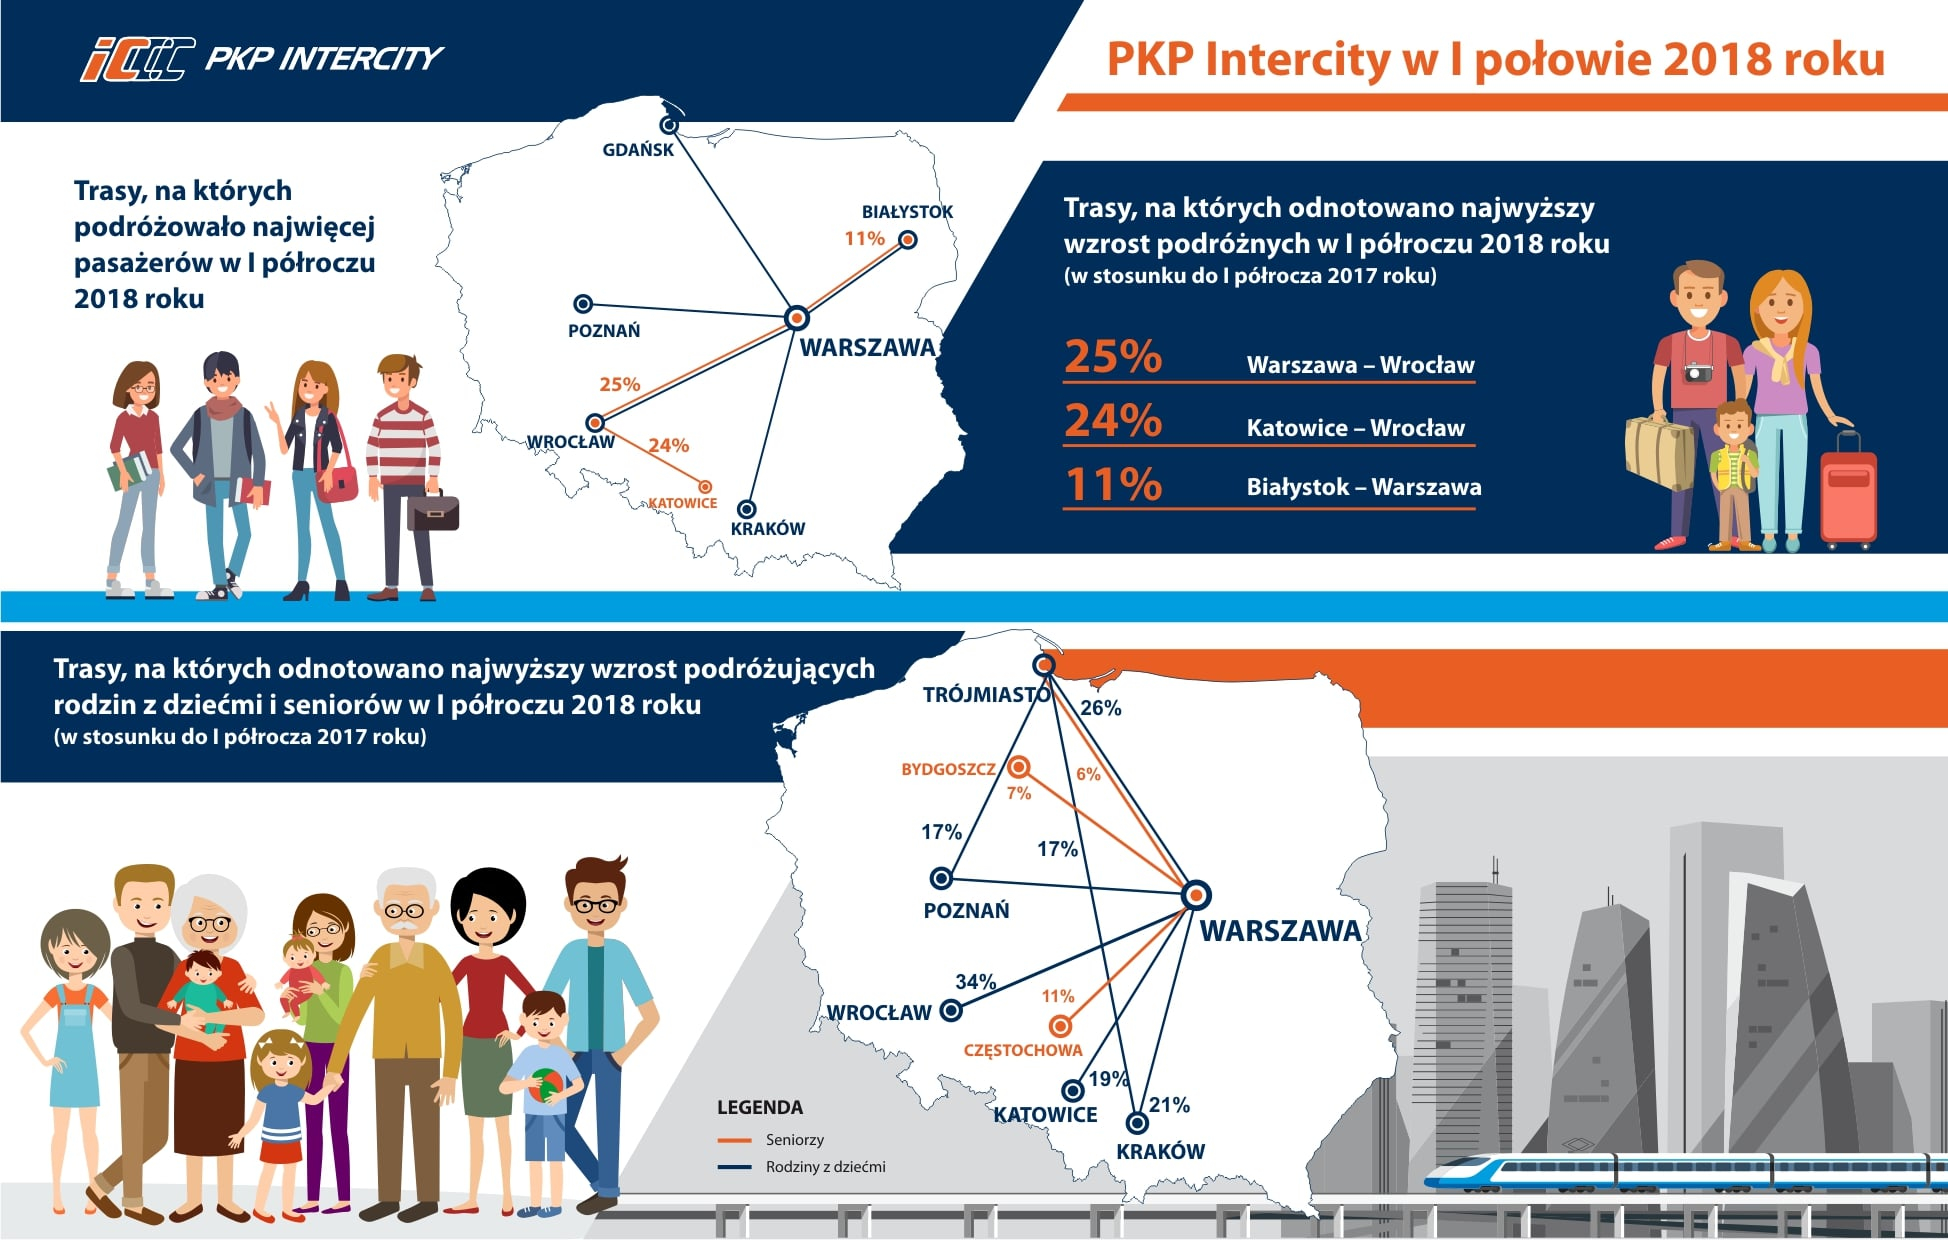 PKP Intercity sprawdziło, dokąd najchętniej jeżdżą Polacy